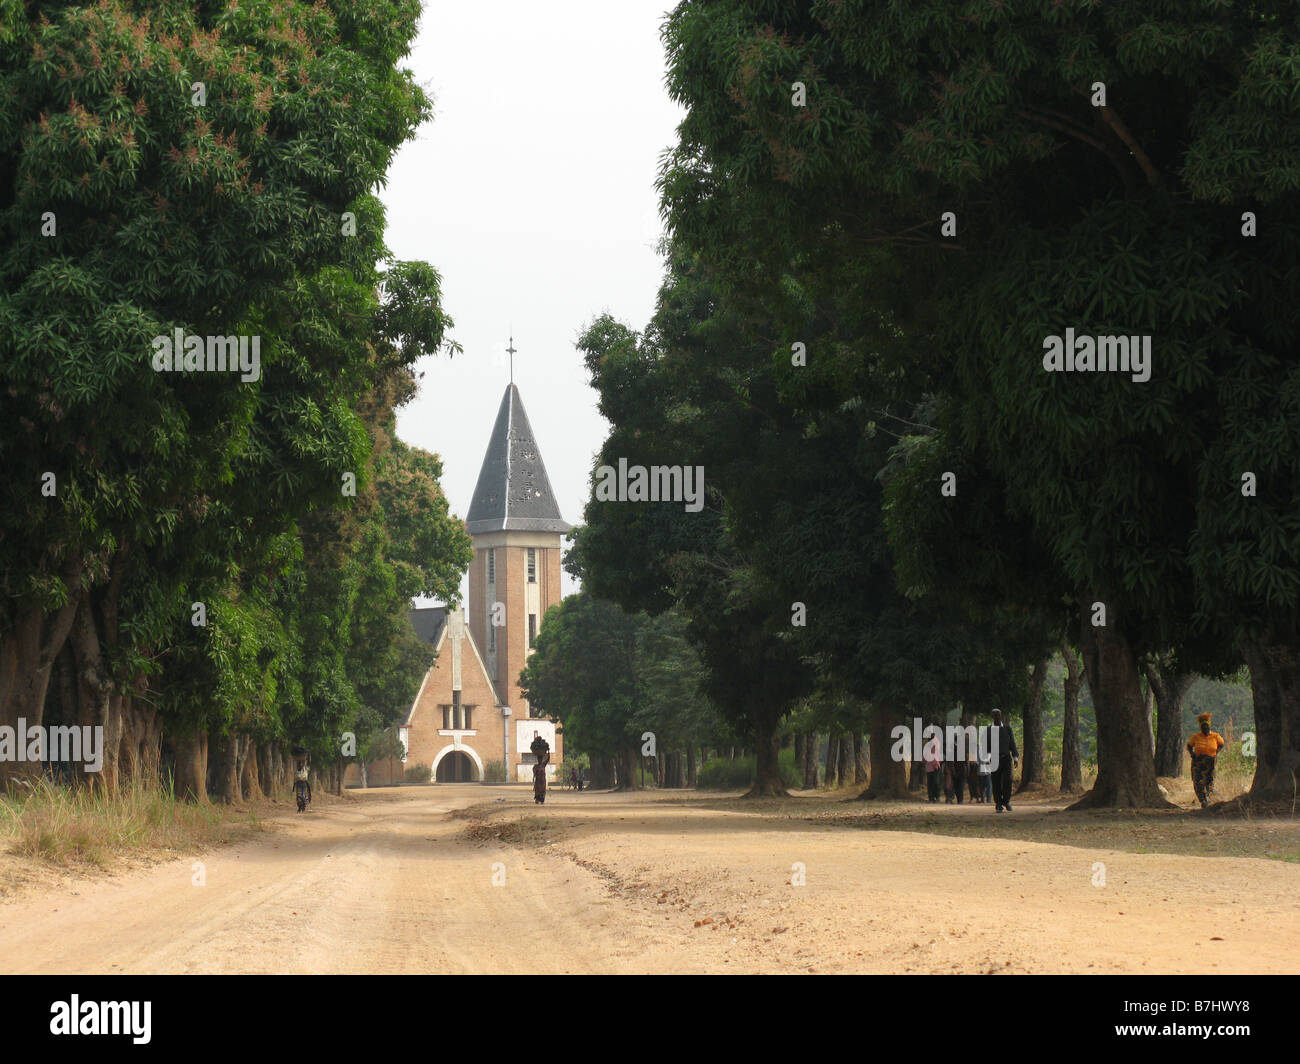 Viale di alberi e della chiesa nella città di Manono Katanga provincia della Repubblica Democratica del Congo la Chiesa è fatiscente e in disuso. Foto Stock